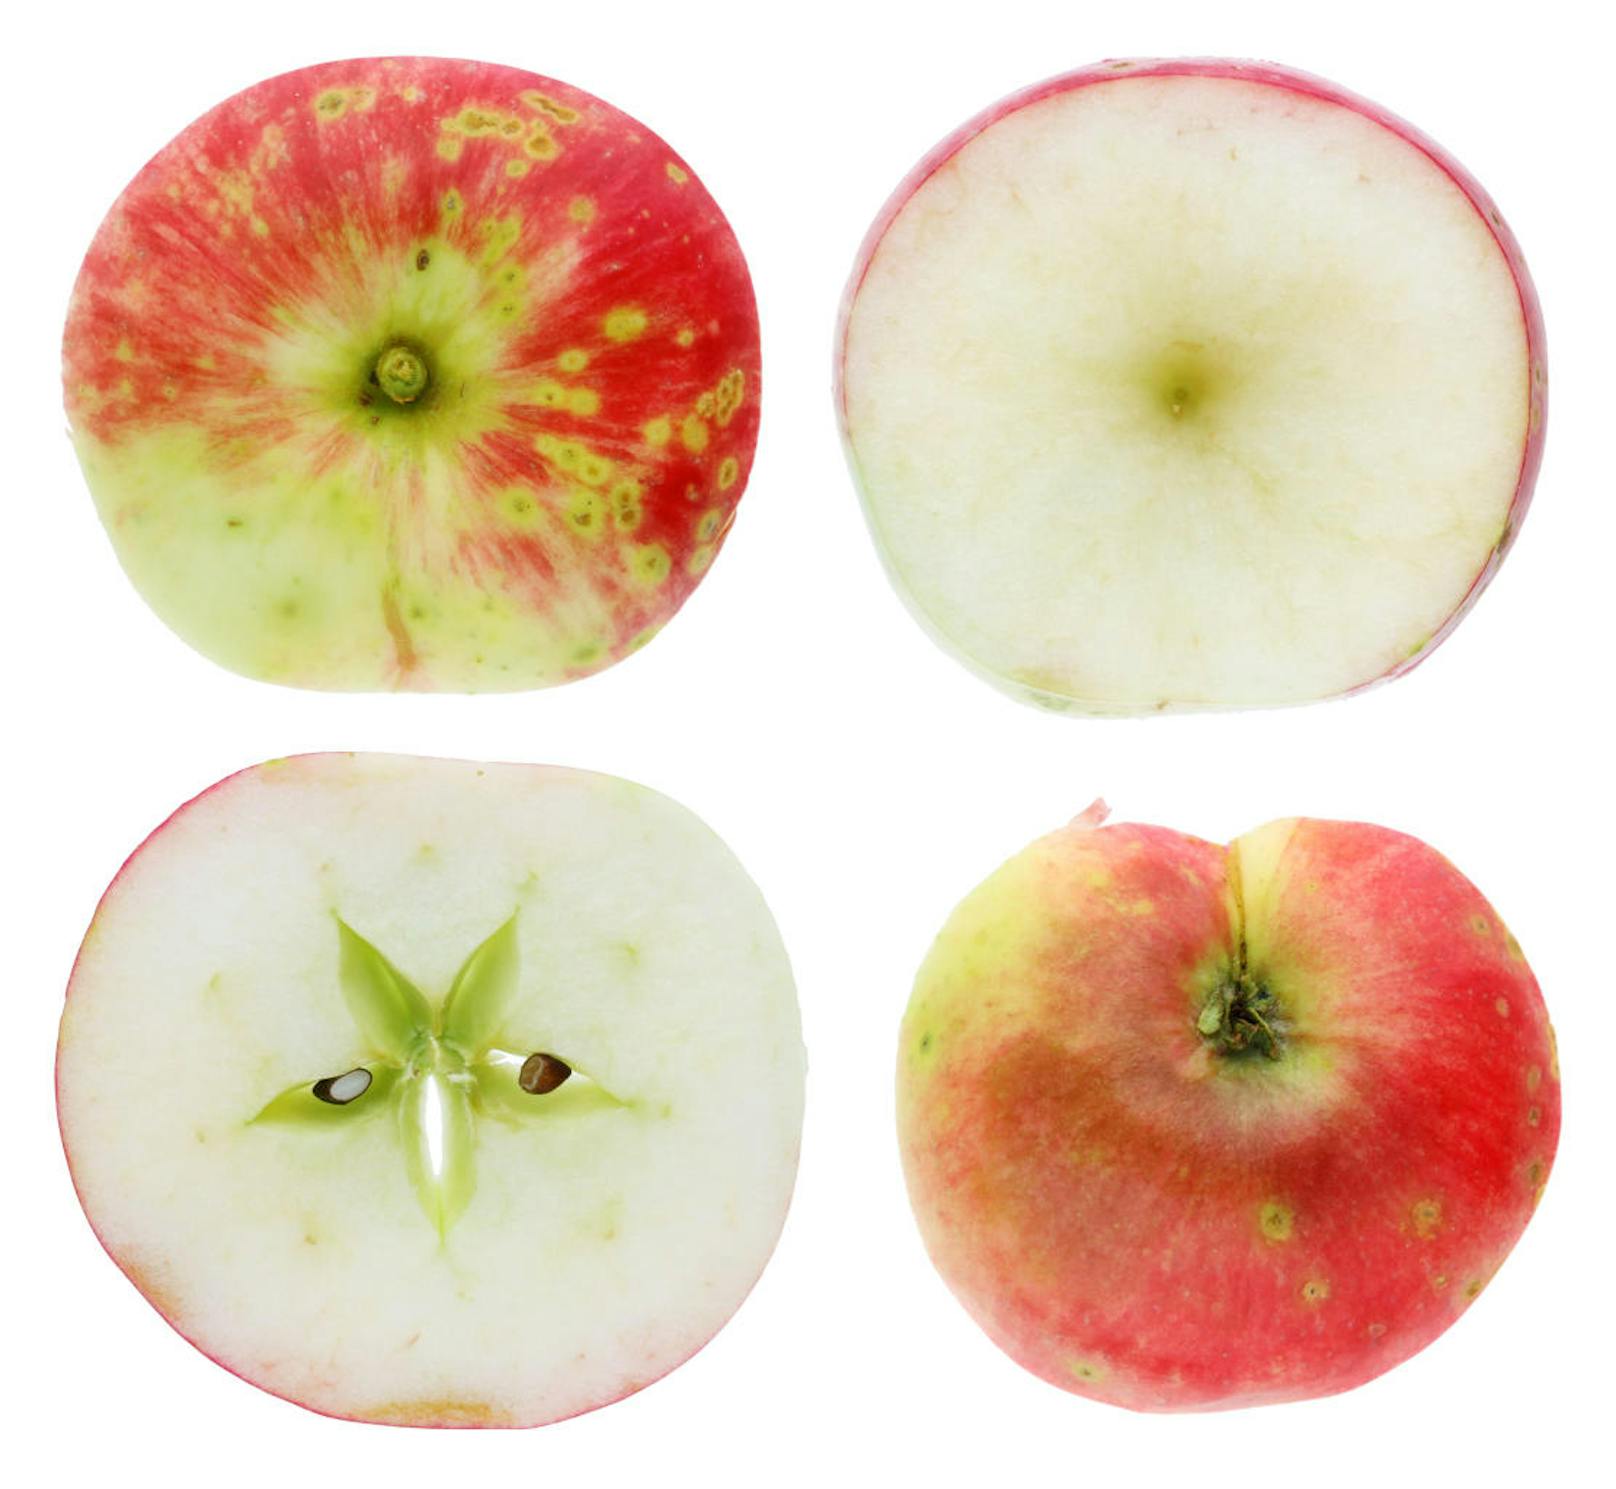 <b>Apfelchips</b>
Gesunde, knusprige Apfelchips gehen so: Äpfel ungeschält in Ringe schneiden, das Kerngehäuse je nach Wunsch entfernen oder auch drinlassen - es sieht nach dem Backen aus wie ein kleines Sternchen.
